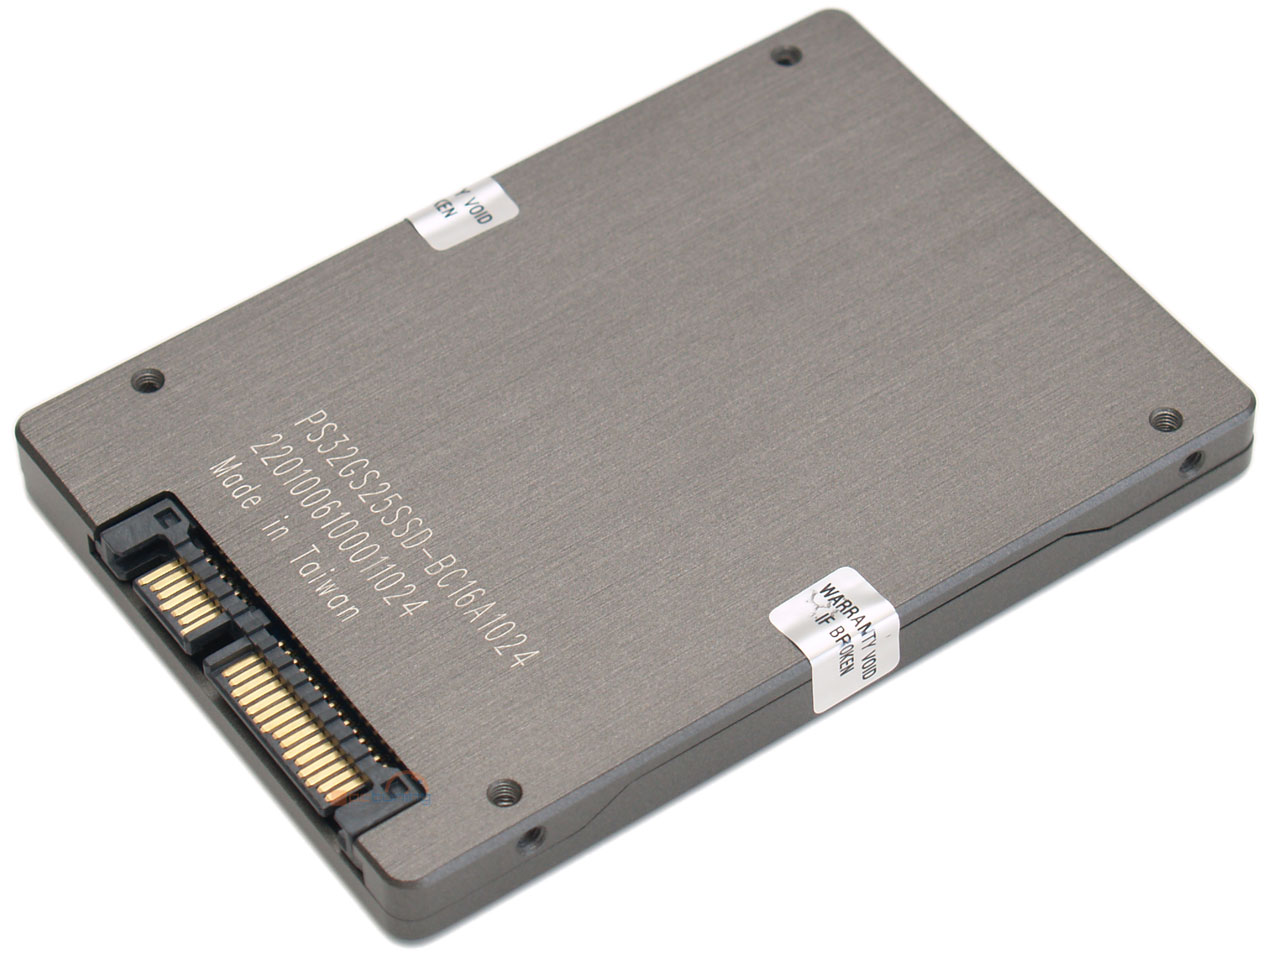 Velký test SSD disků – nejlevnější modely do 40 GB